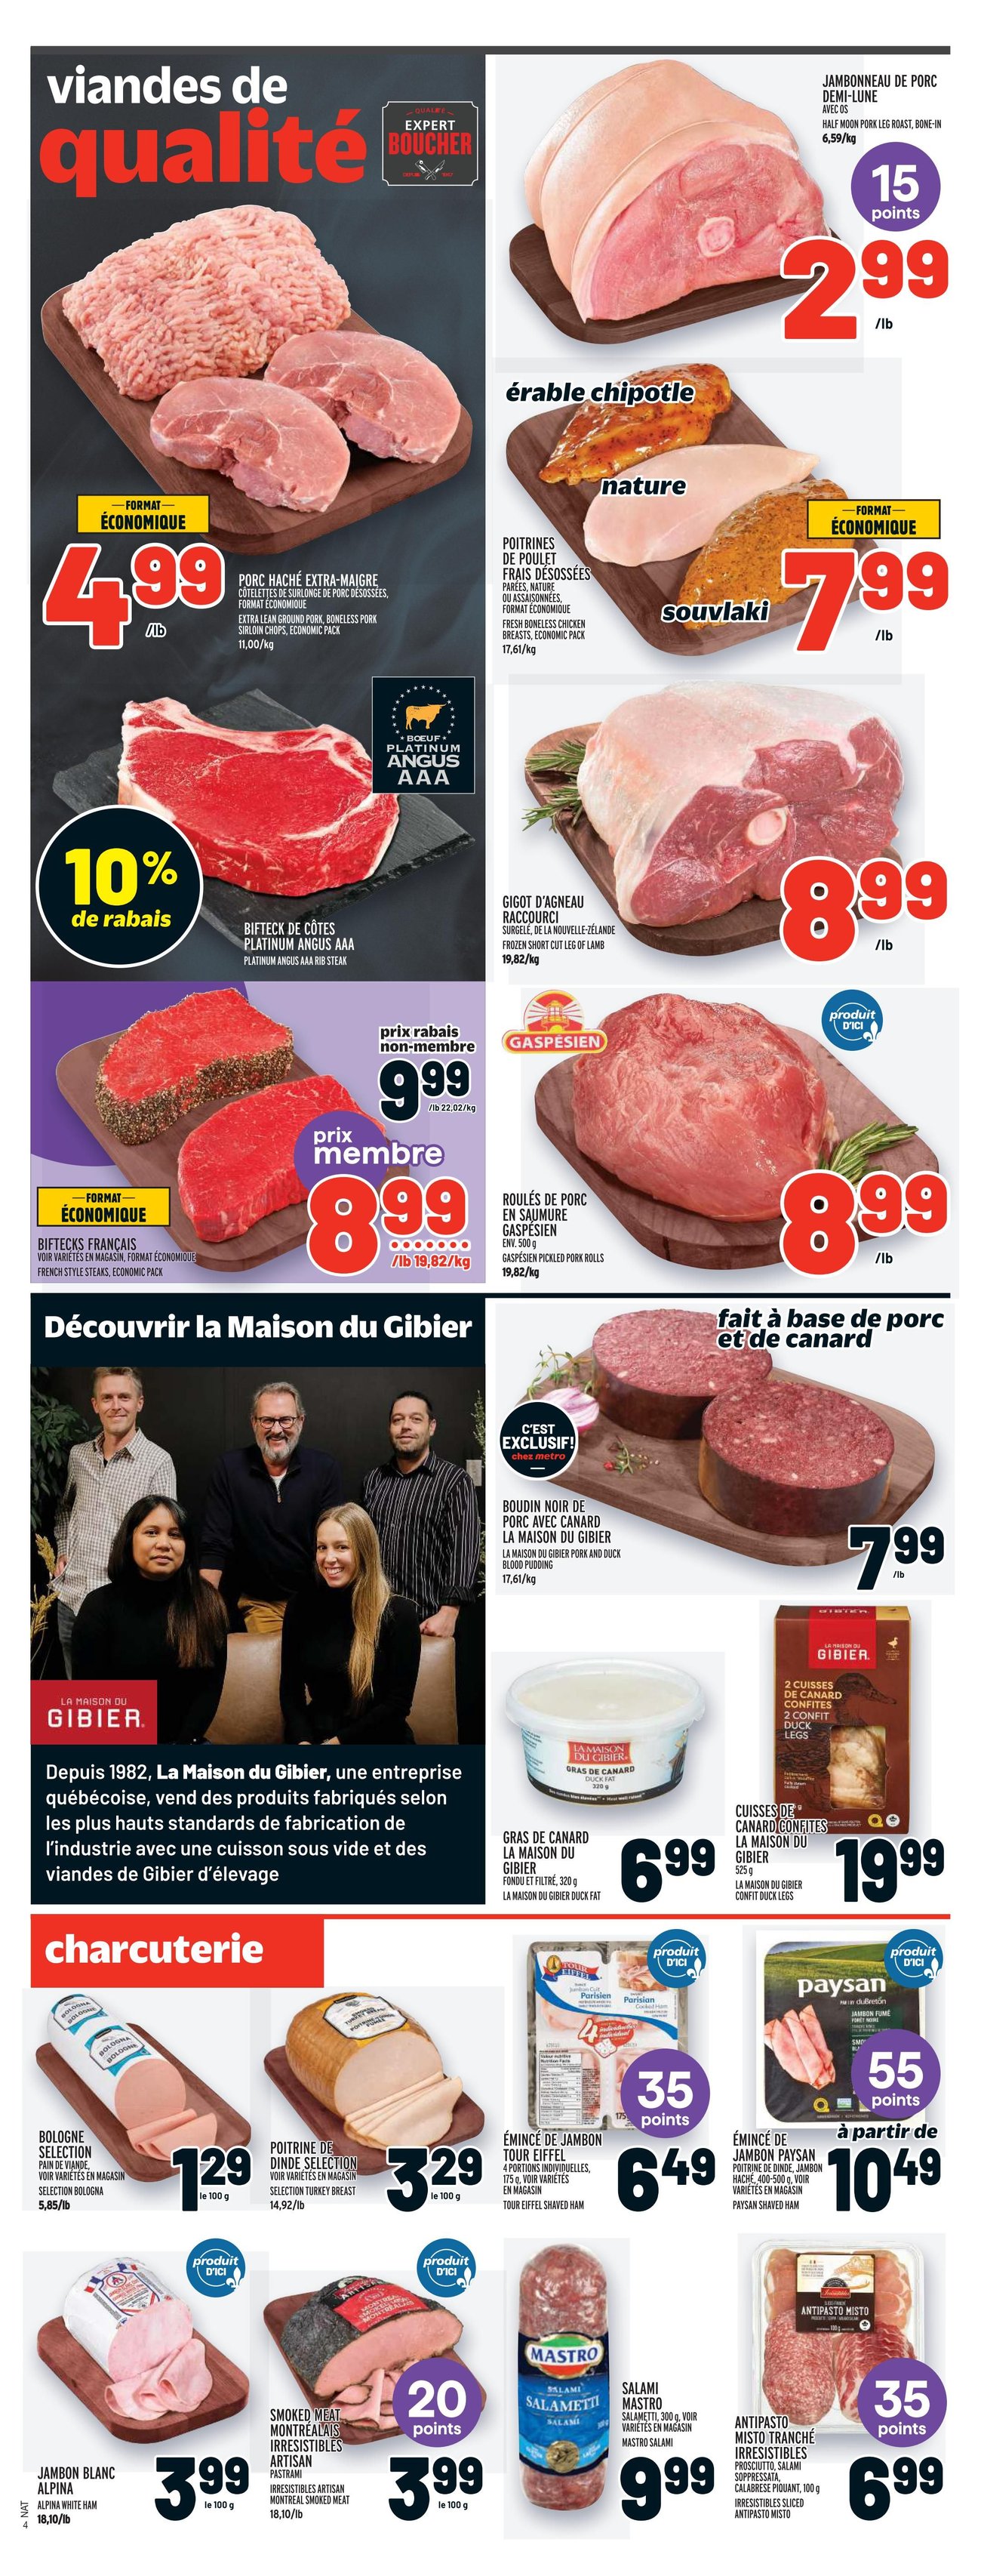 Metro - Quebec - Weekly Flyer Specials - Page 7